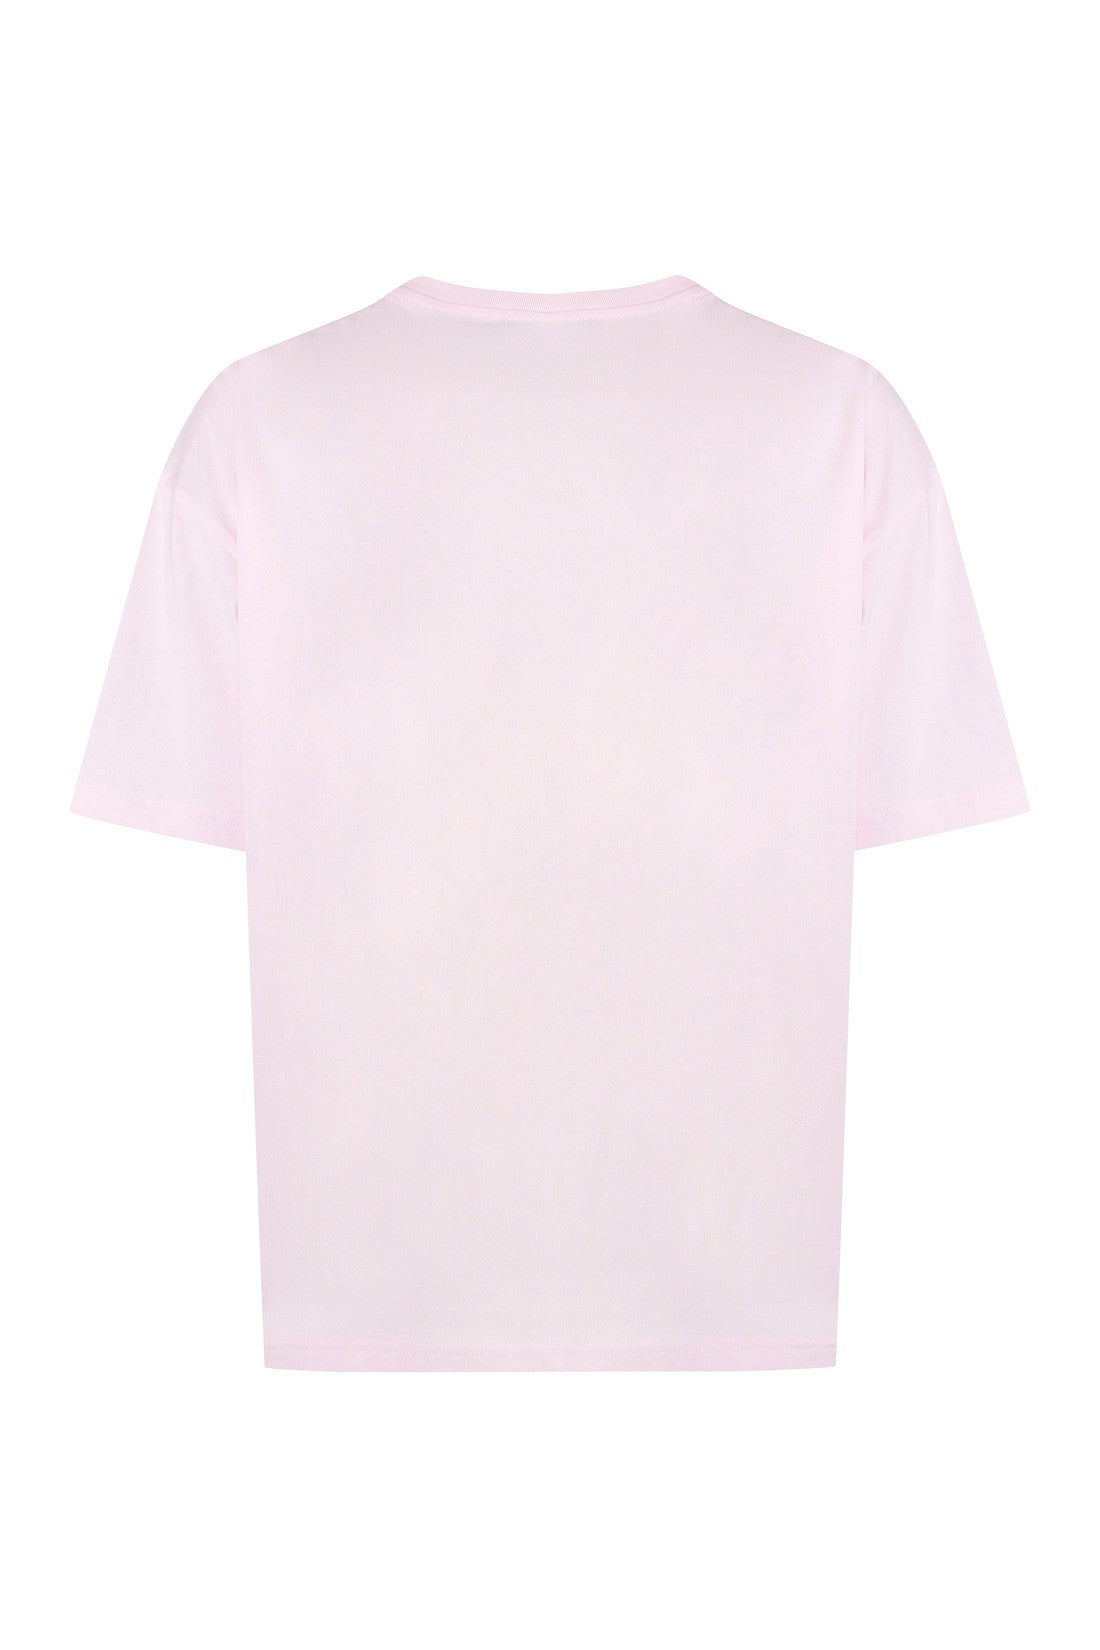 A.P.C.-OUTLET-SALE-Ana Cotton crew-neck T-shirt-ARCHIVIST